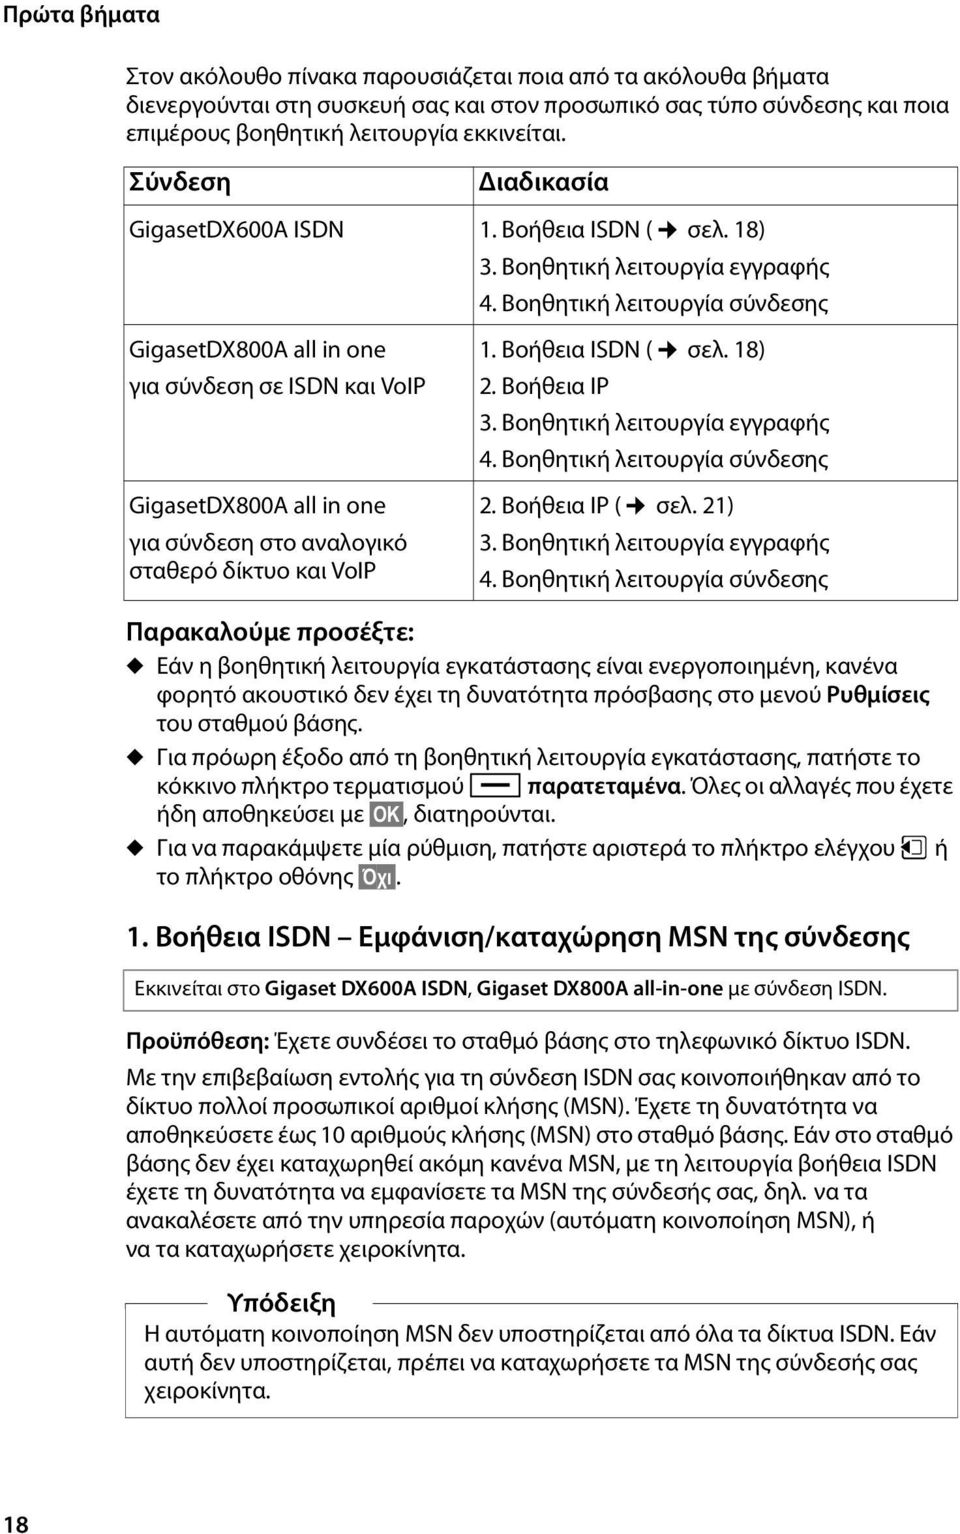 Βοηθητική λειτουργία σύνδεσης GigasetDX800A all in one για σύνδεση σε ISDN και VoIP GigasetDX800A all in one για σύνδεση στο αναλογικό σταθερό δίκτυο και VoIP 1. Βοήθεια ISDN ( σελ. 18) 2.